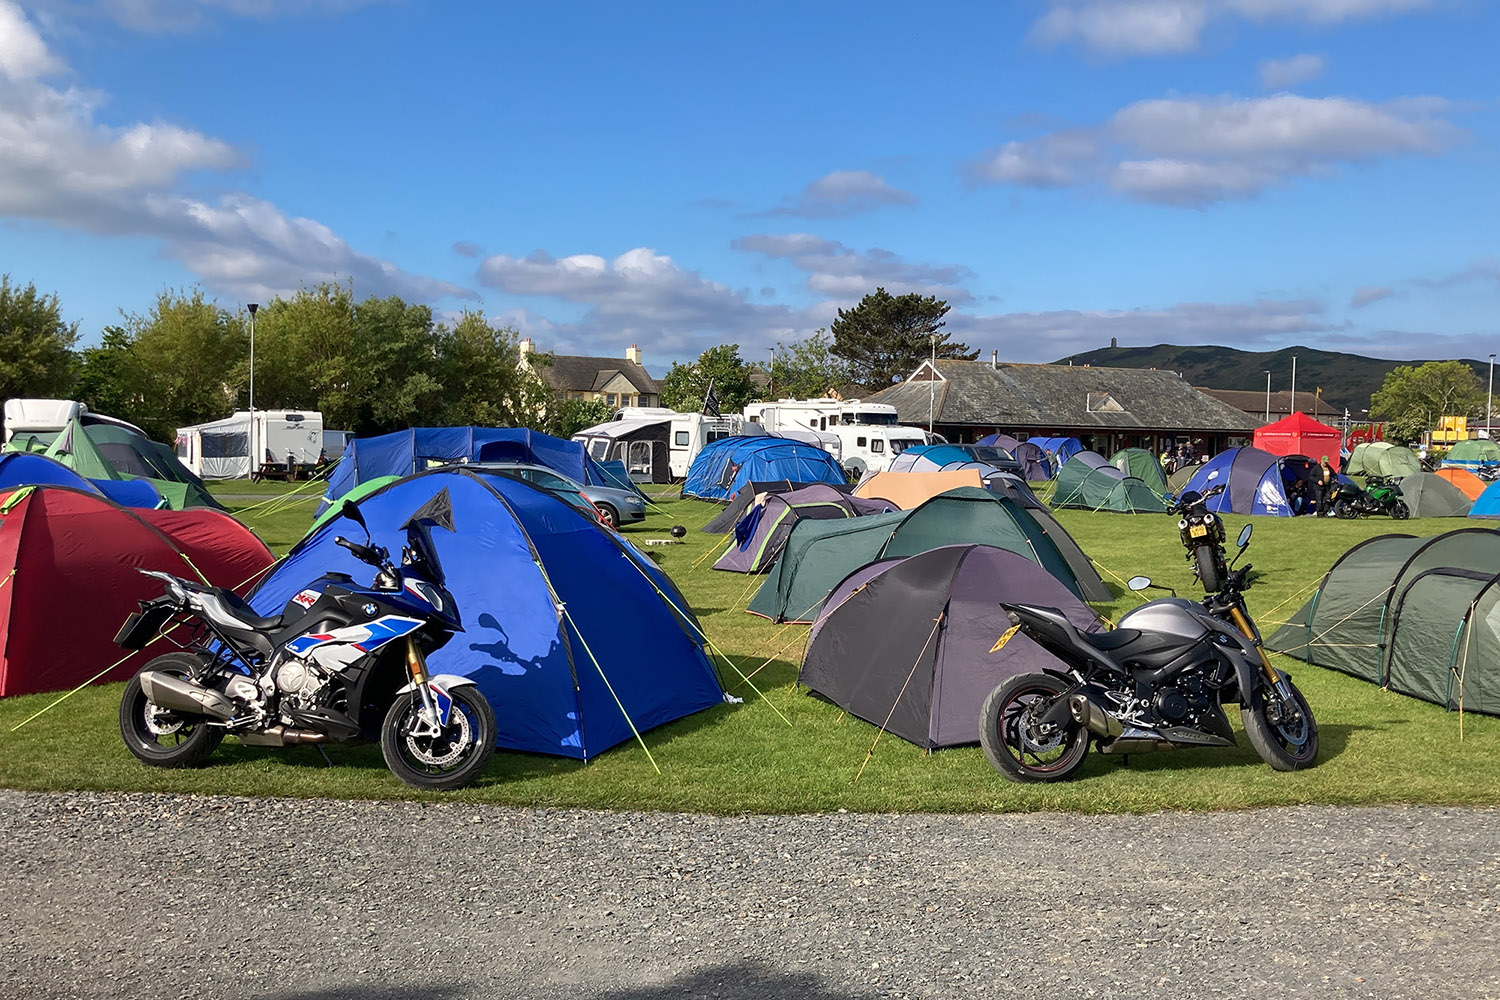 Peel campsite during TT week